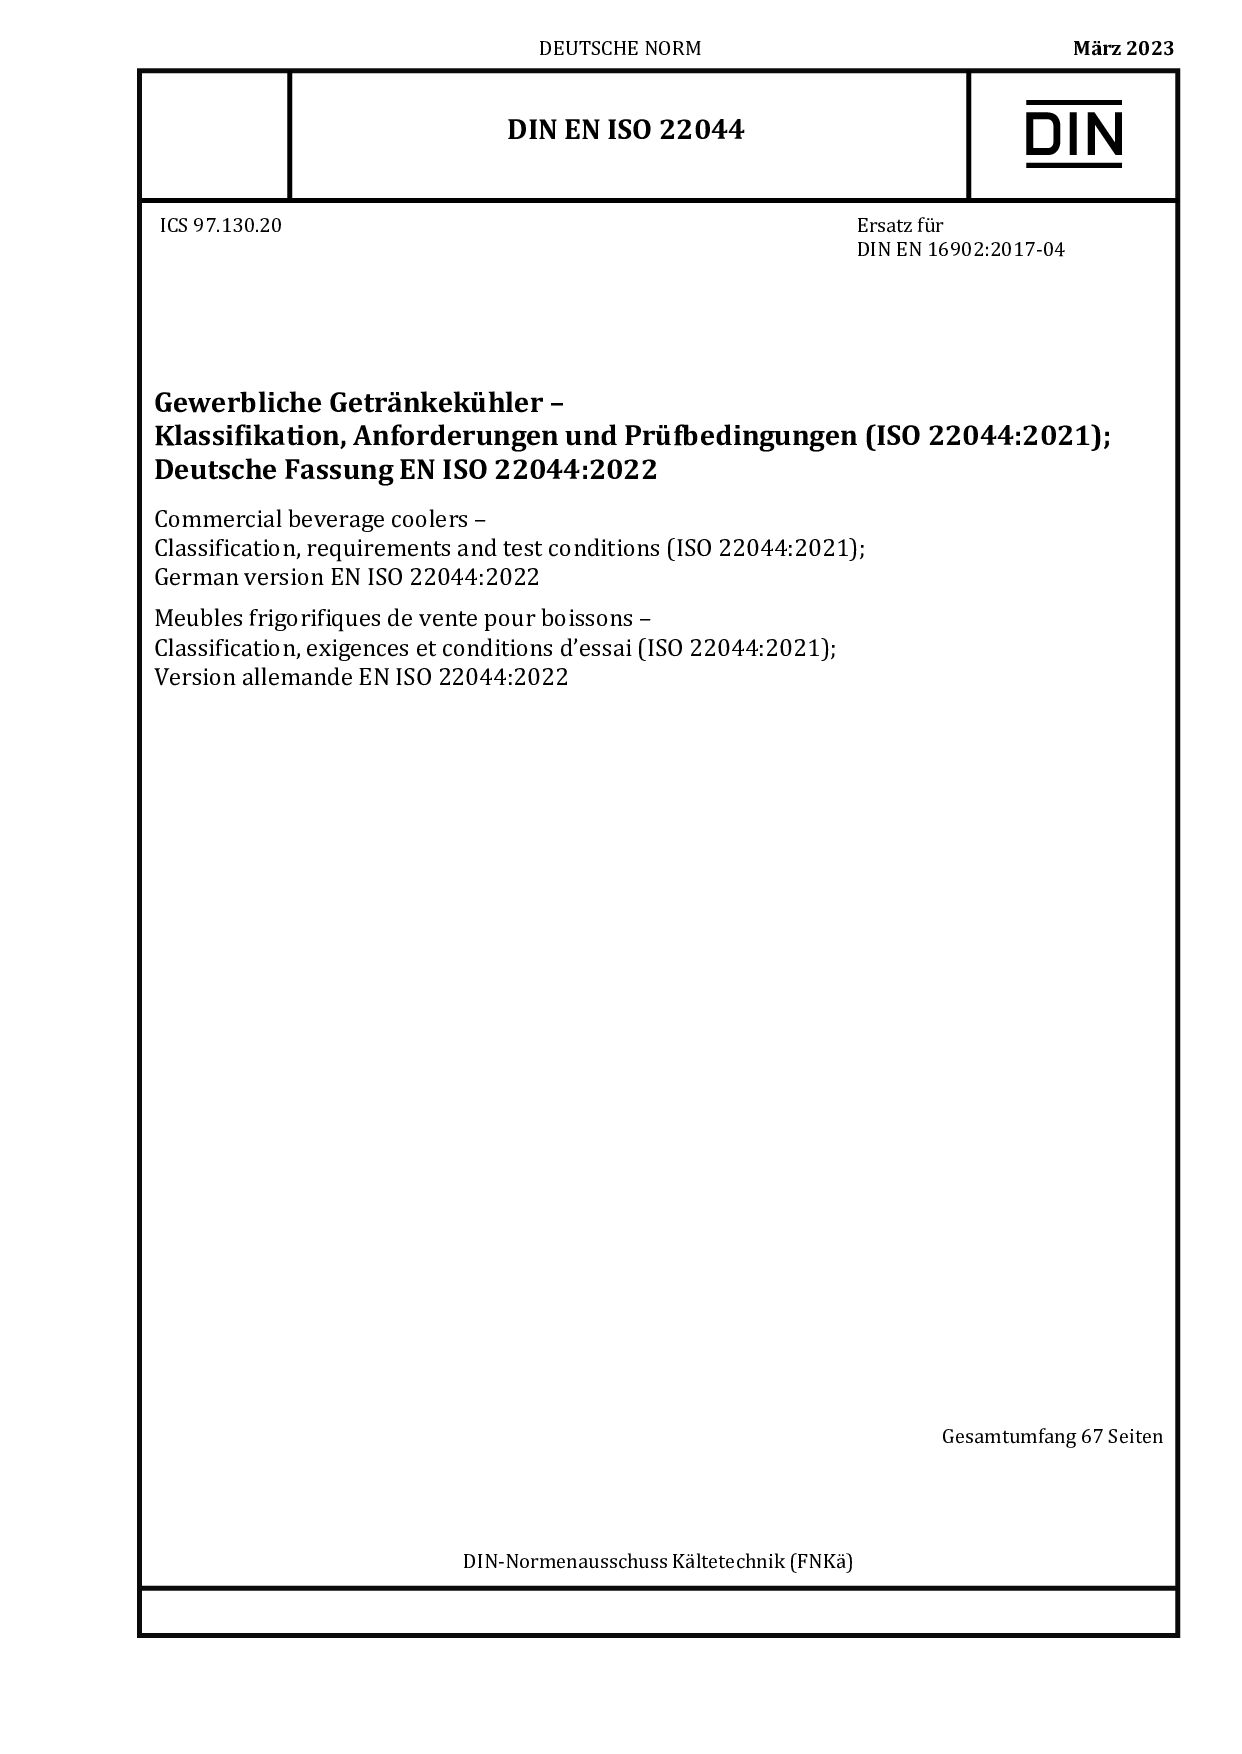 DIN EN ISO 22044:2023封面图